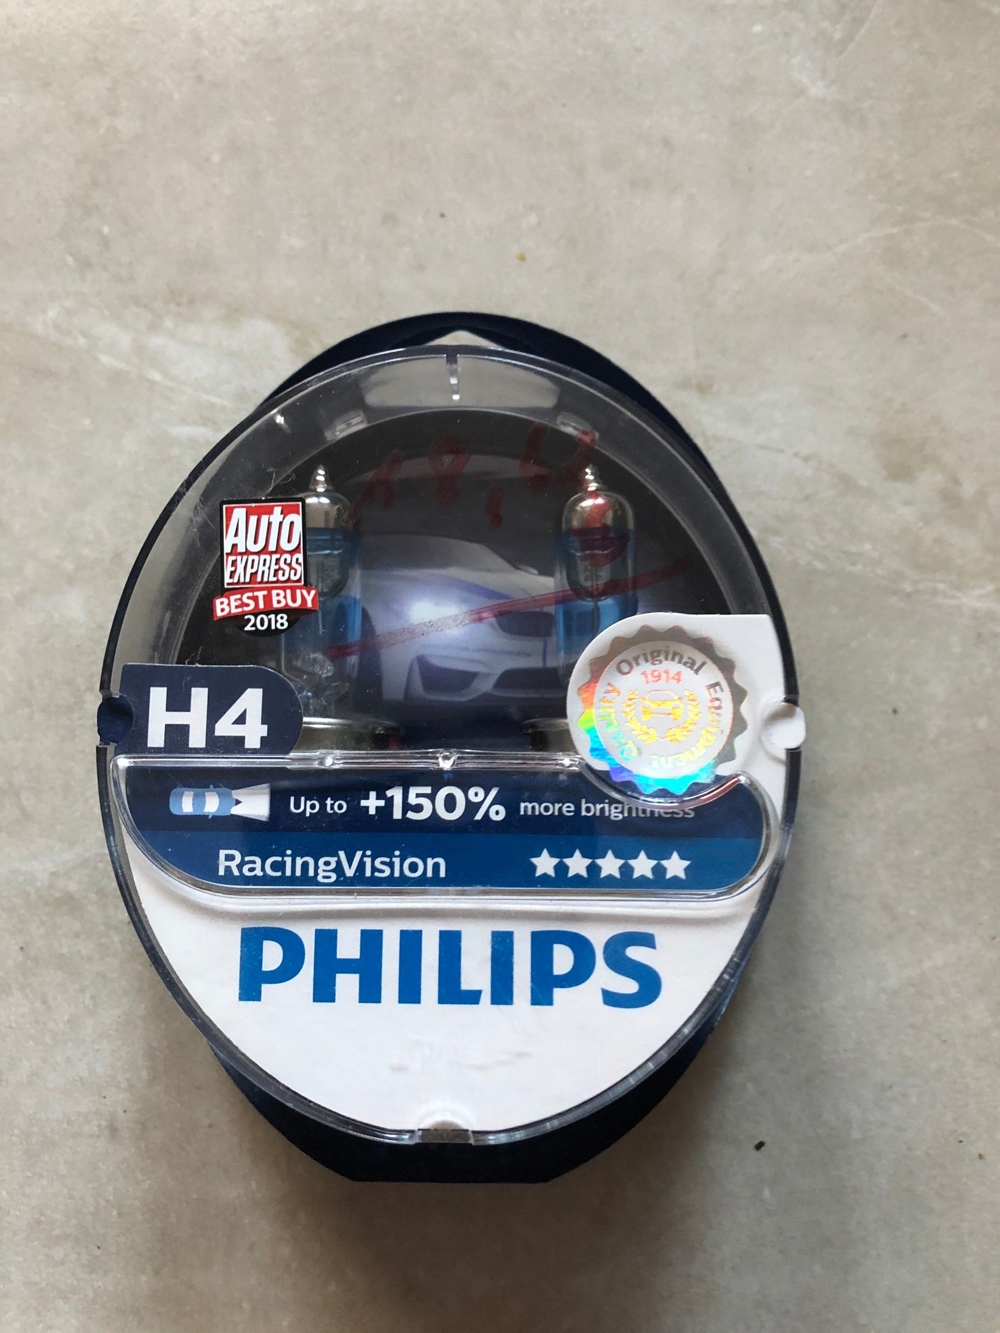 Philips RacingVision H4, +150% mehr Leistung, Motorrad, Scooter, Roller, Mofa, Birnen